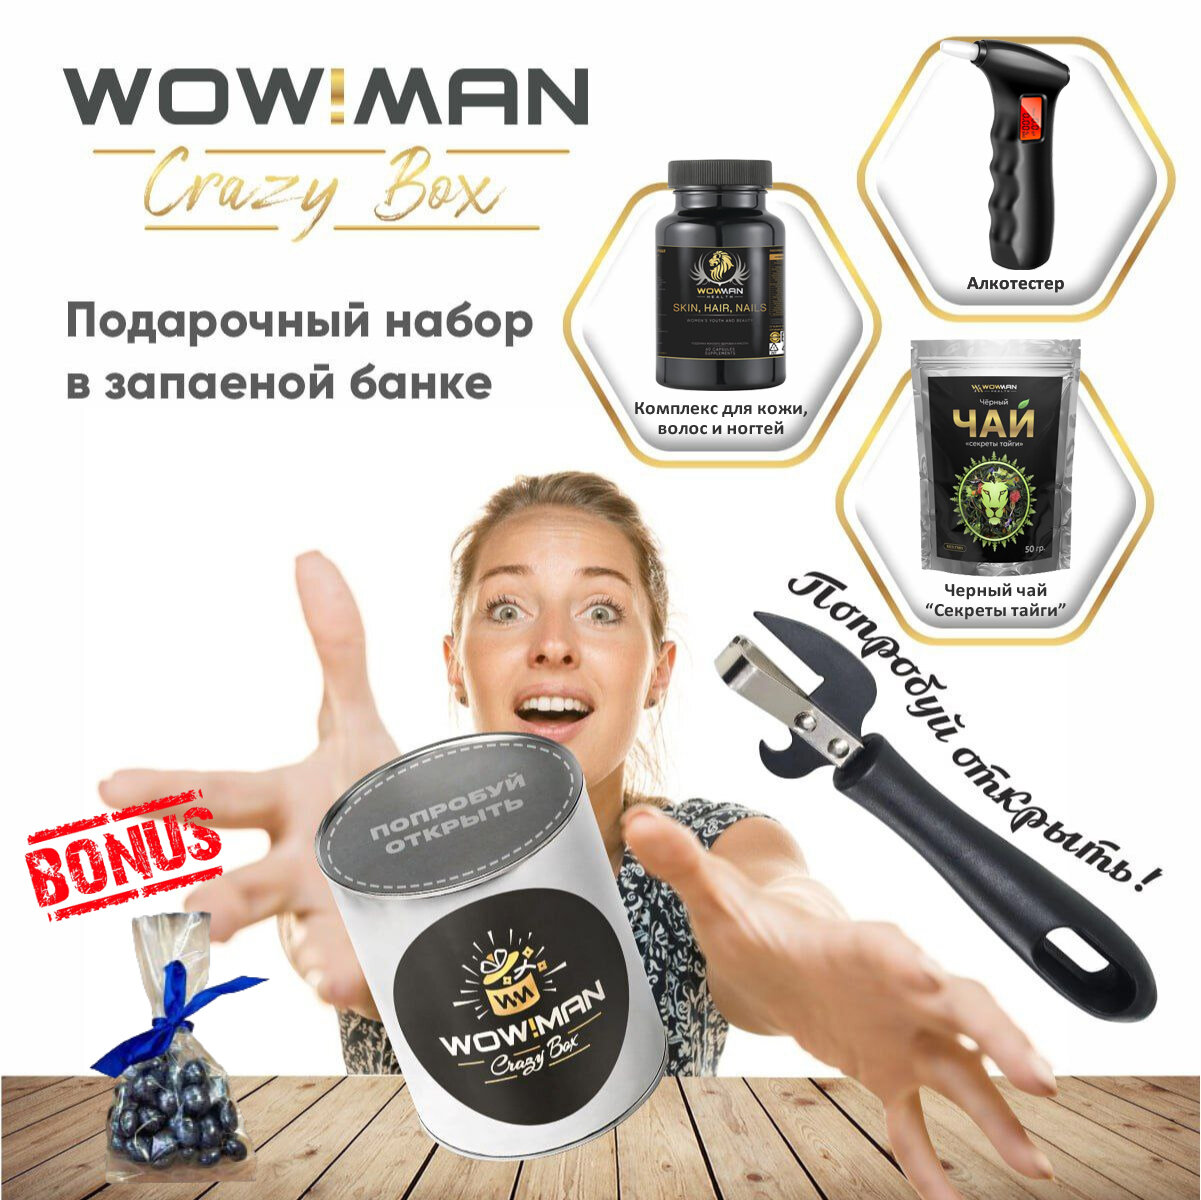 Подарочный набор WowMan Crazy Box Комплекс для кожи волос и ногтей/Алкотестер BandRate Smart BRSA65SR/Черный чай "Секреты тайги" 50 гр.